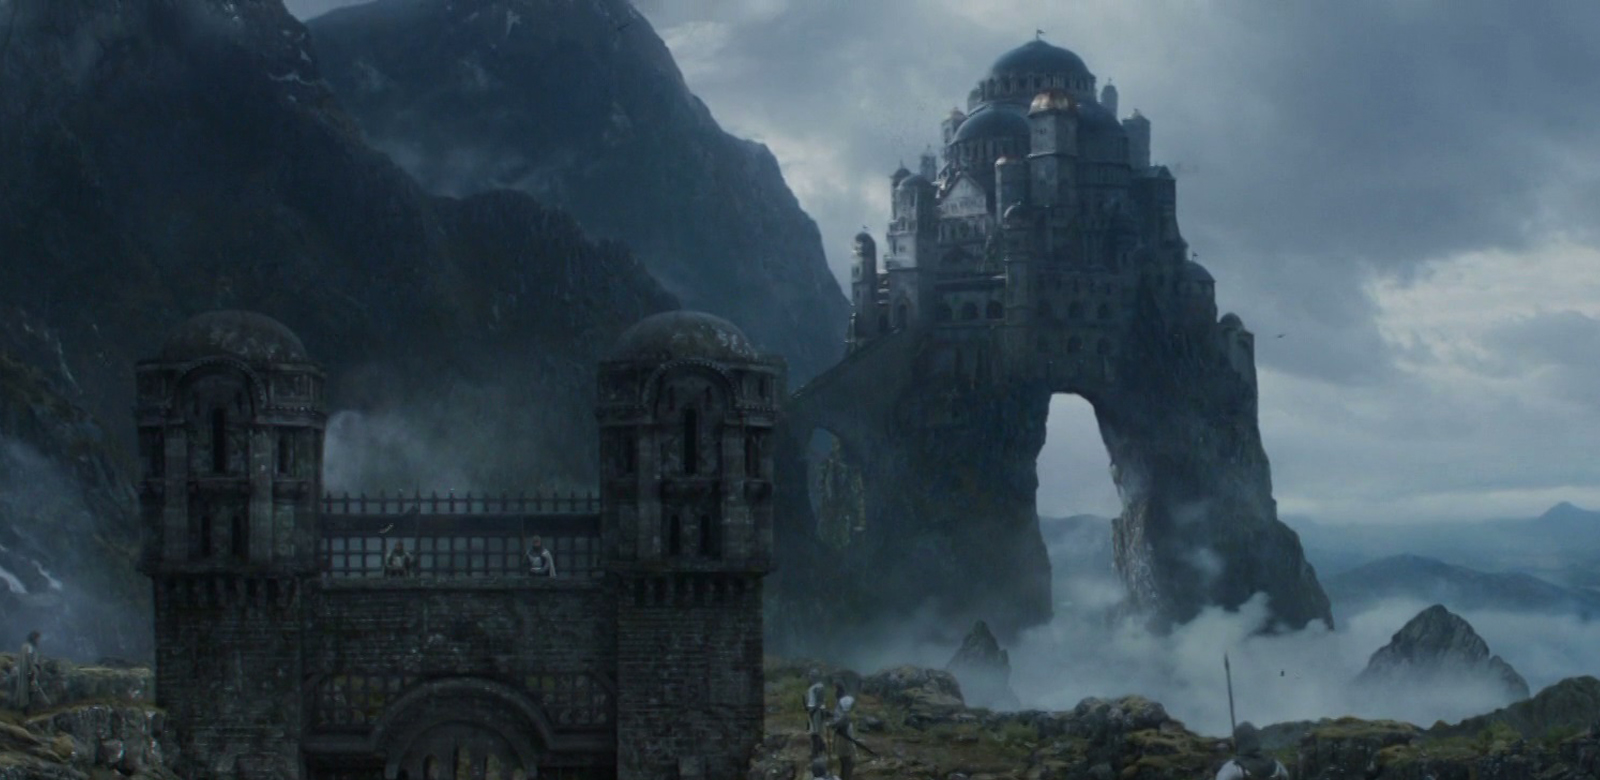 House Arryn, Wiki of Westeros